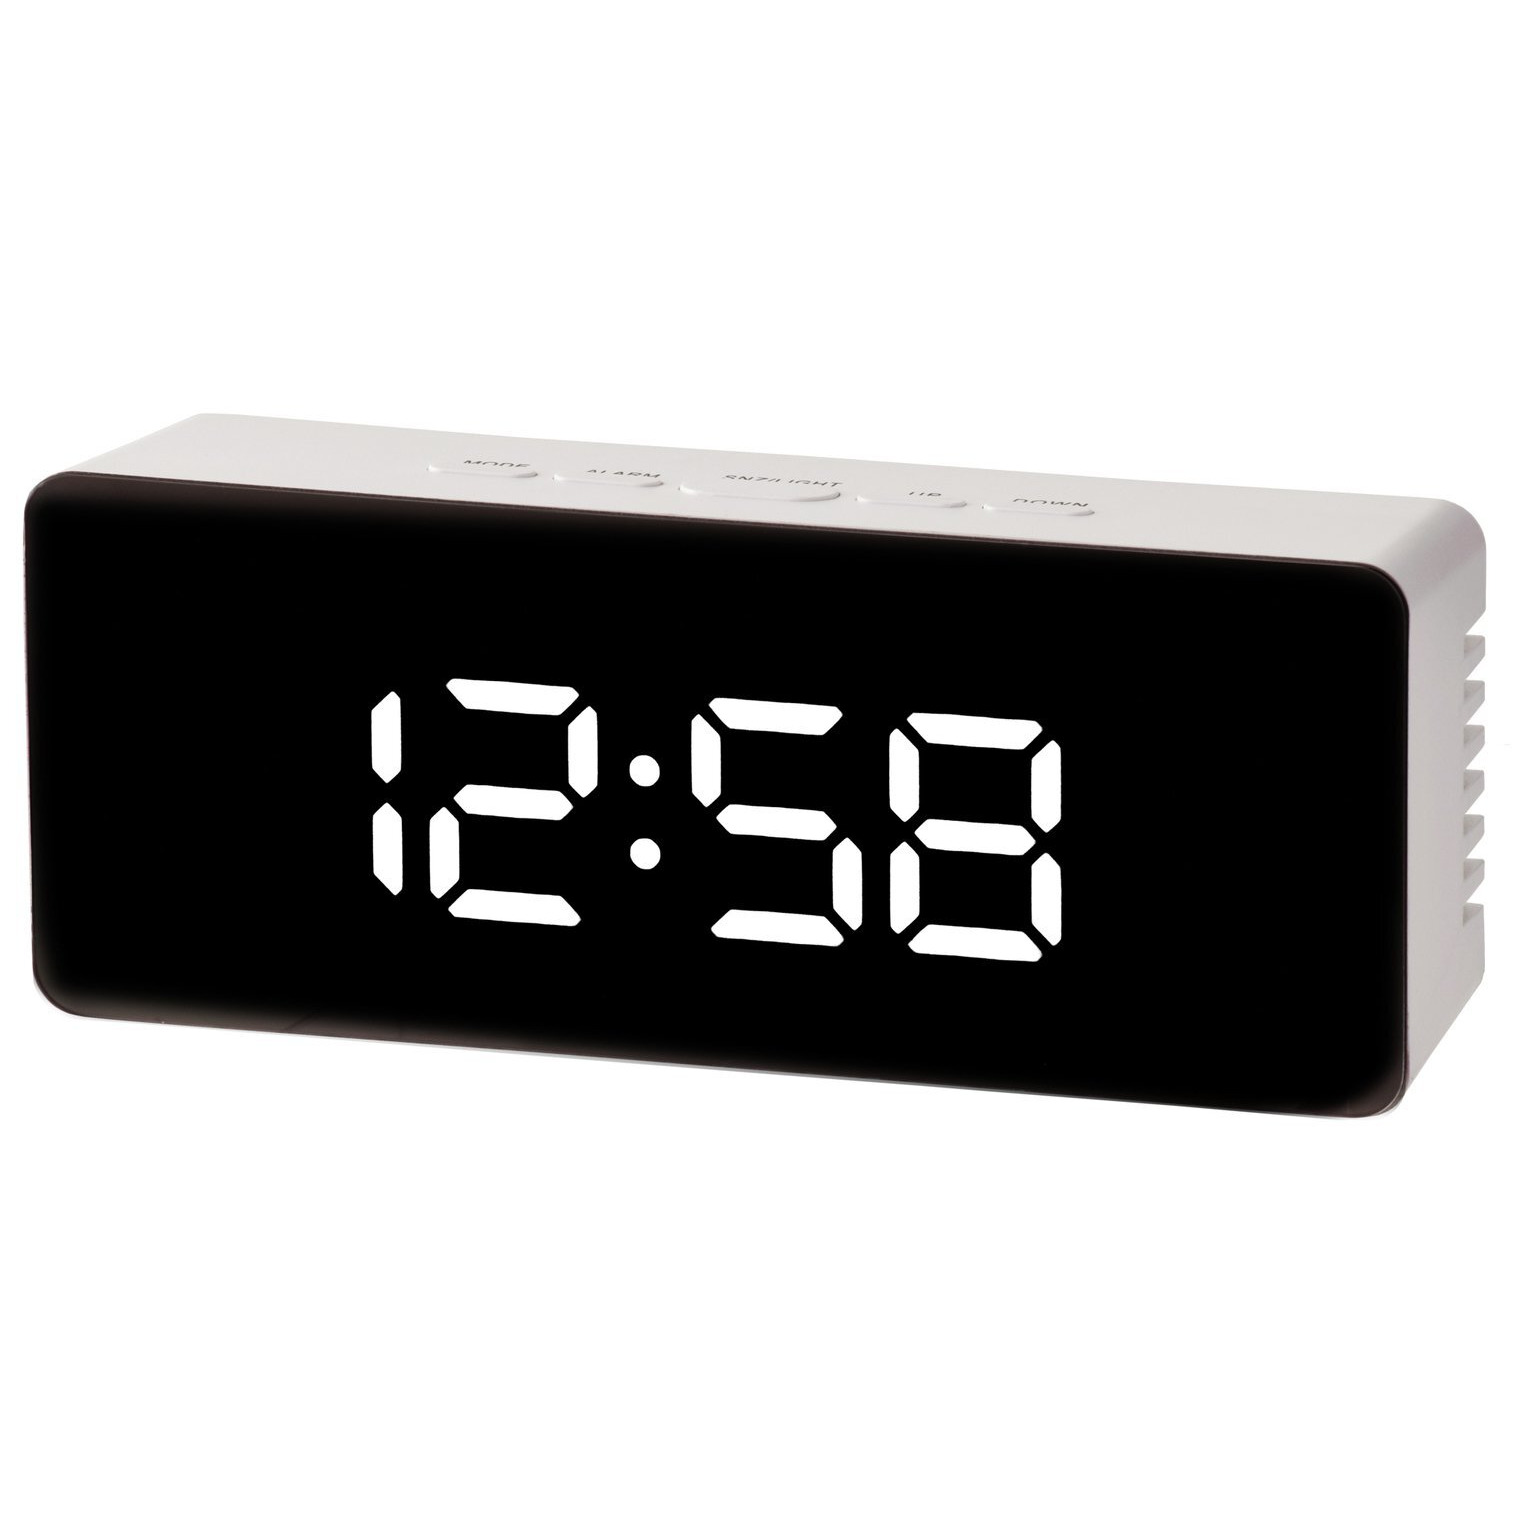 Acctim Medina Digital LED Alarm Clock - White - image 1